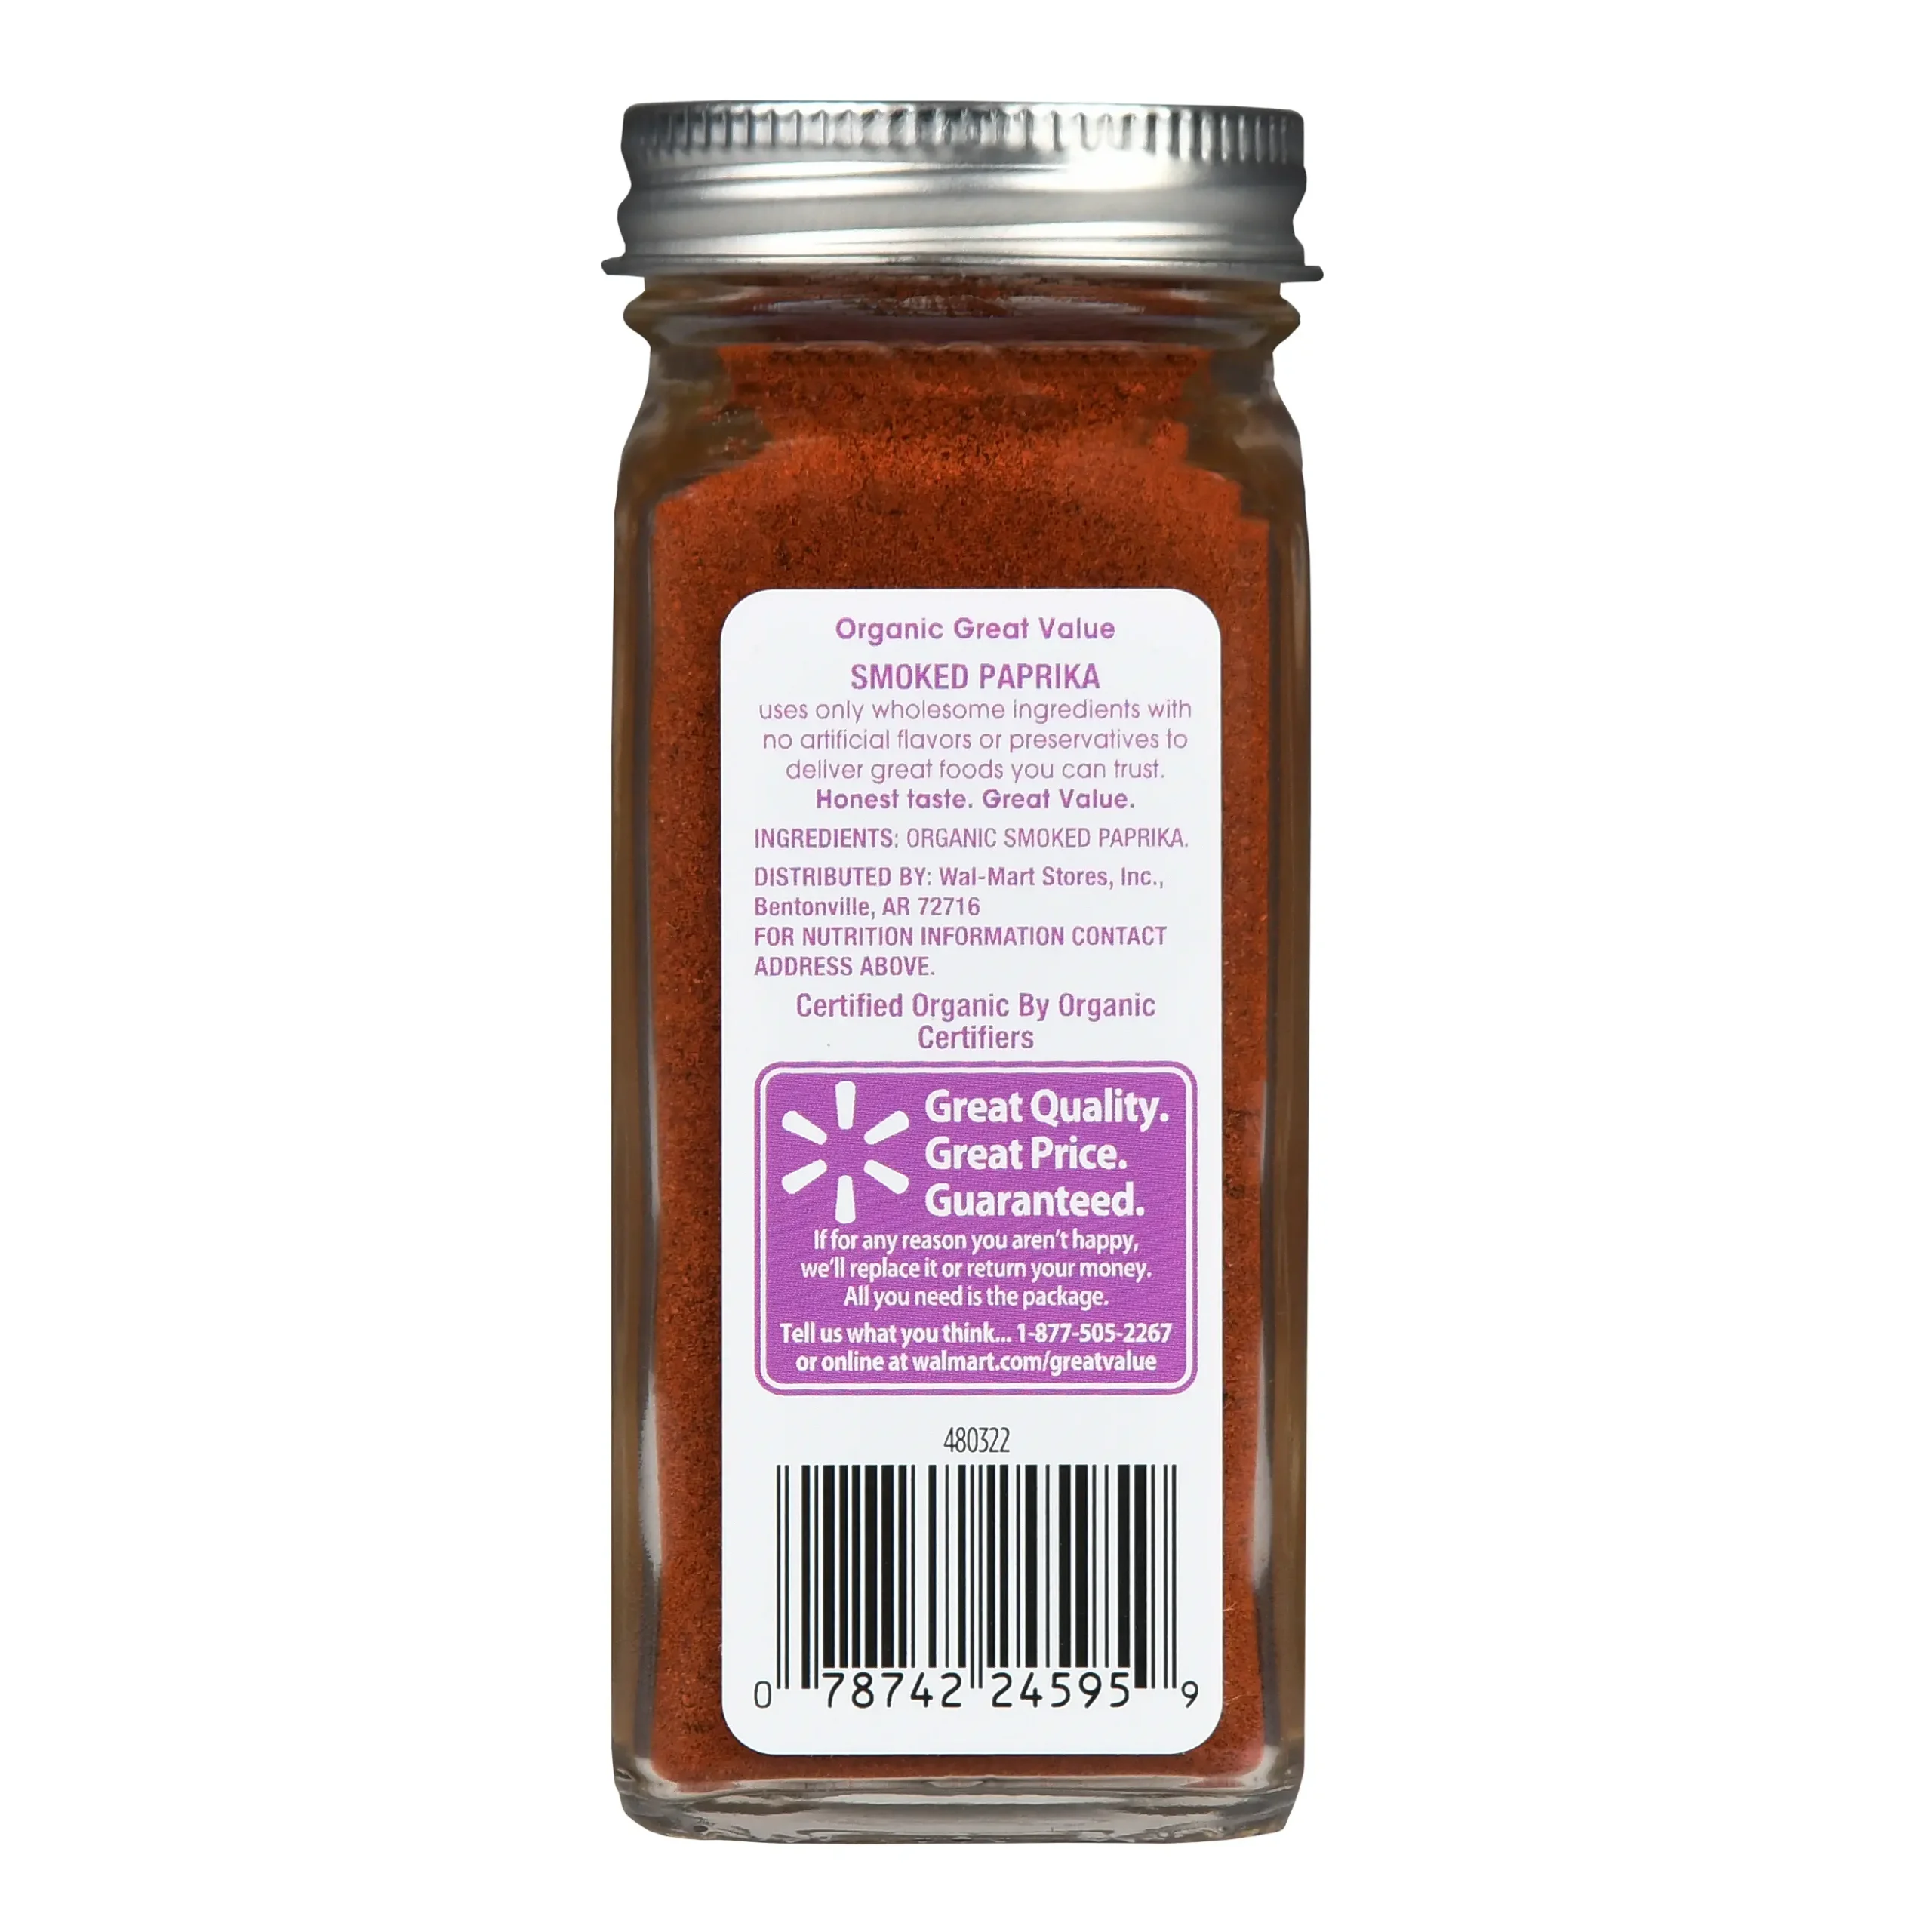 smoked paprika ingredients - Is smoked paprika salt